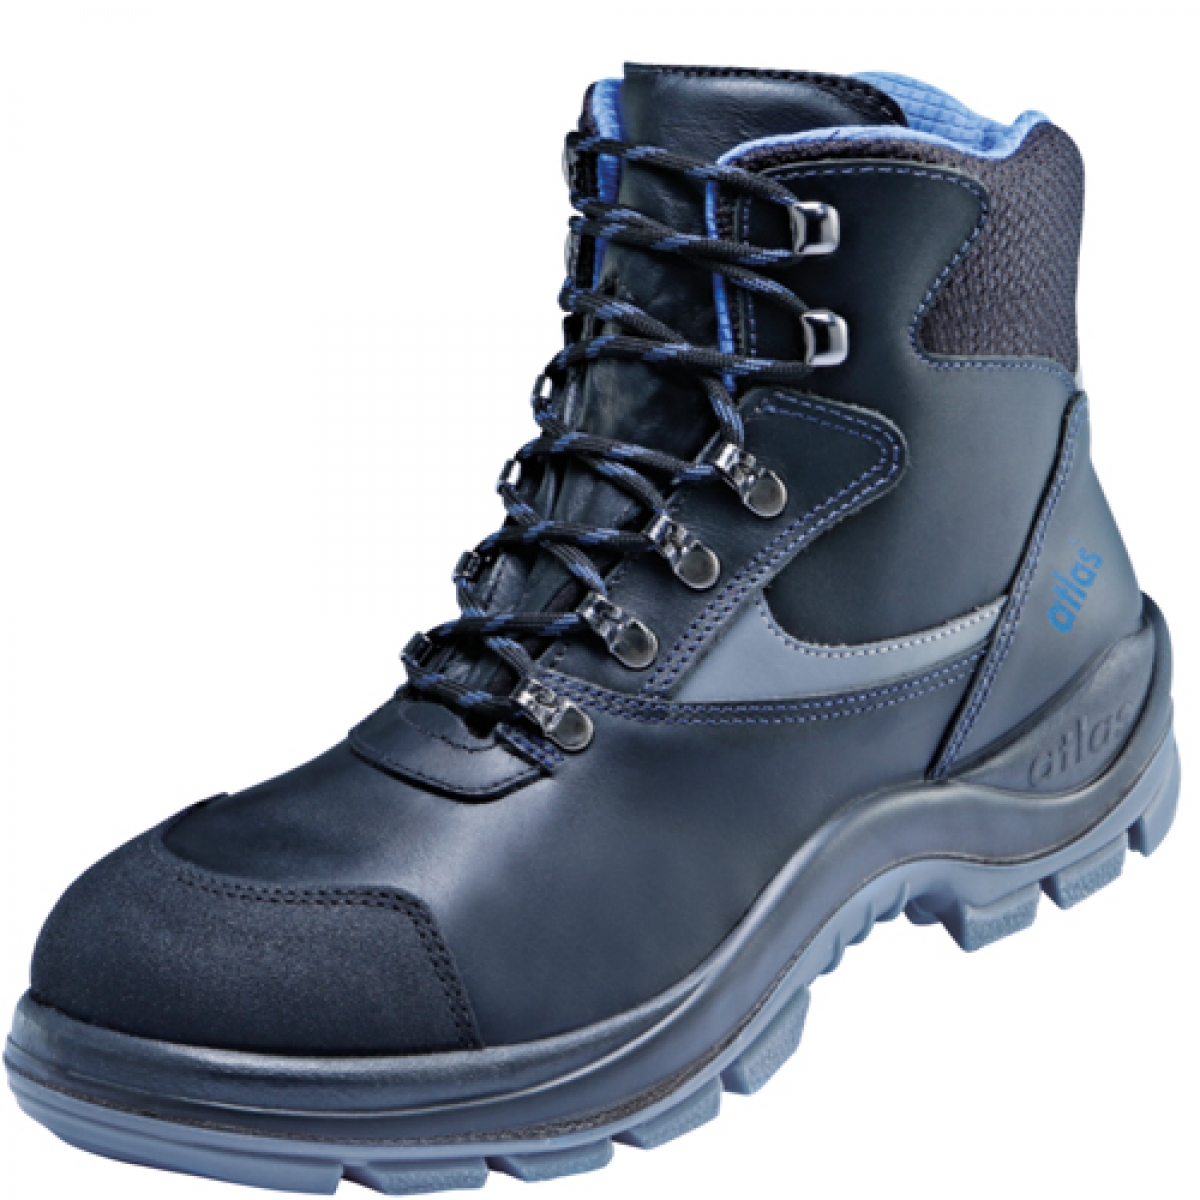 Atlas-Footwear, S3 Arbeits-Berufs-Sicherheits-Schuhe, Hochschuhe, ERGO-MED DUO 737, schwarz